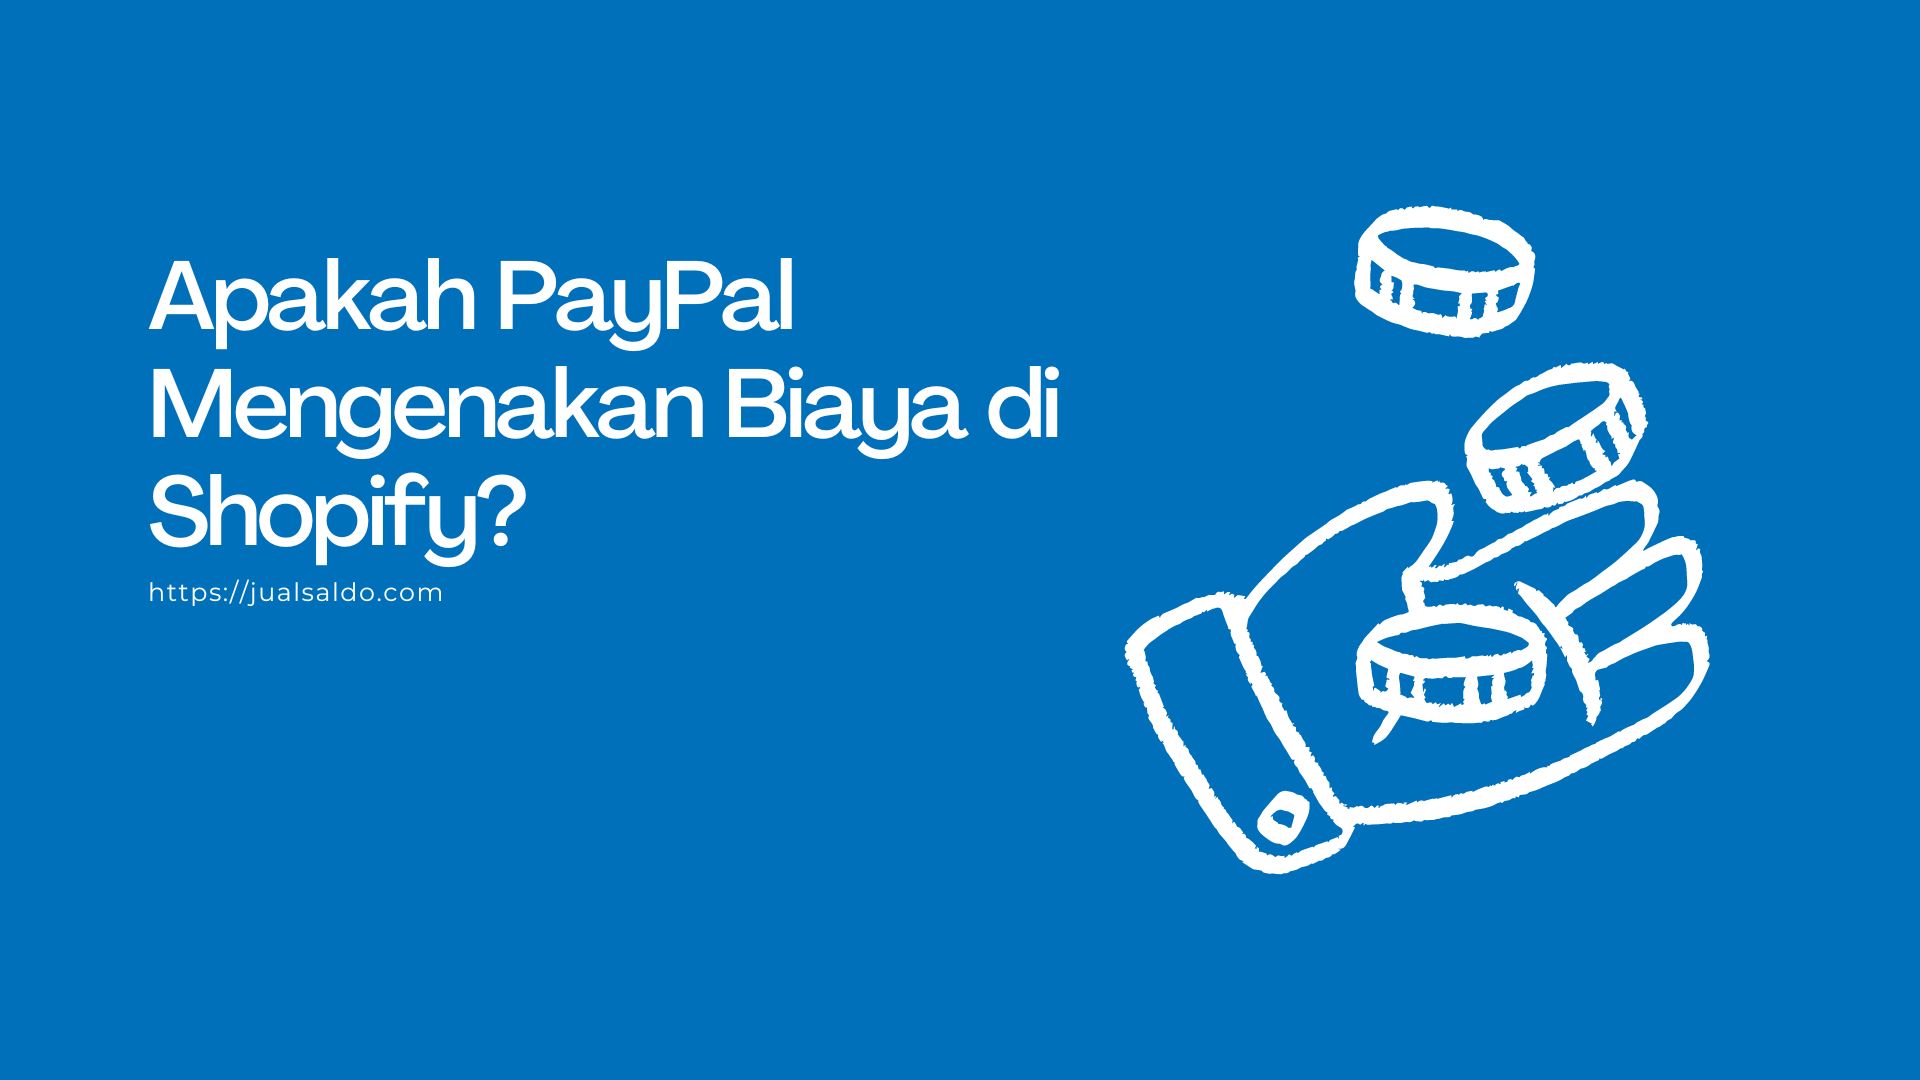 Apakah PayPal Mengenakan Biaya di Shopify?